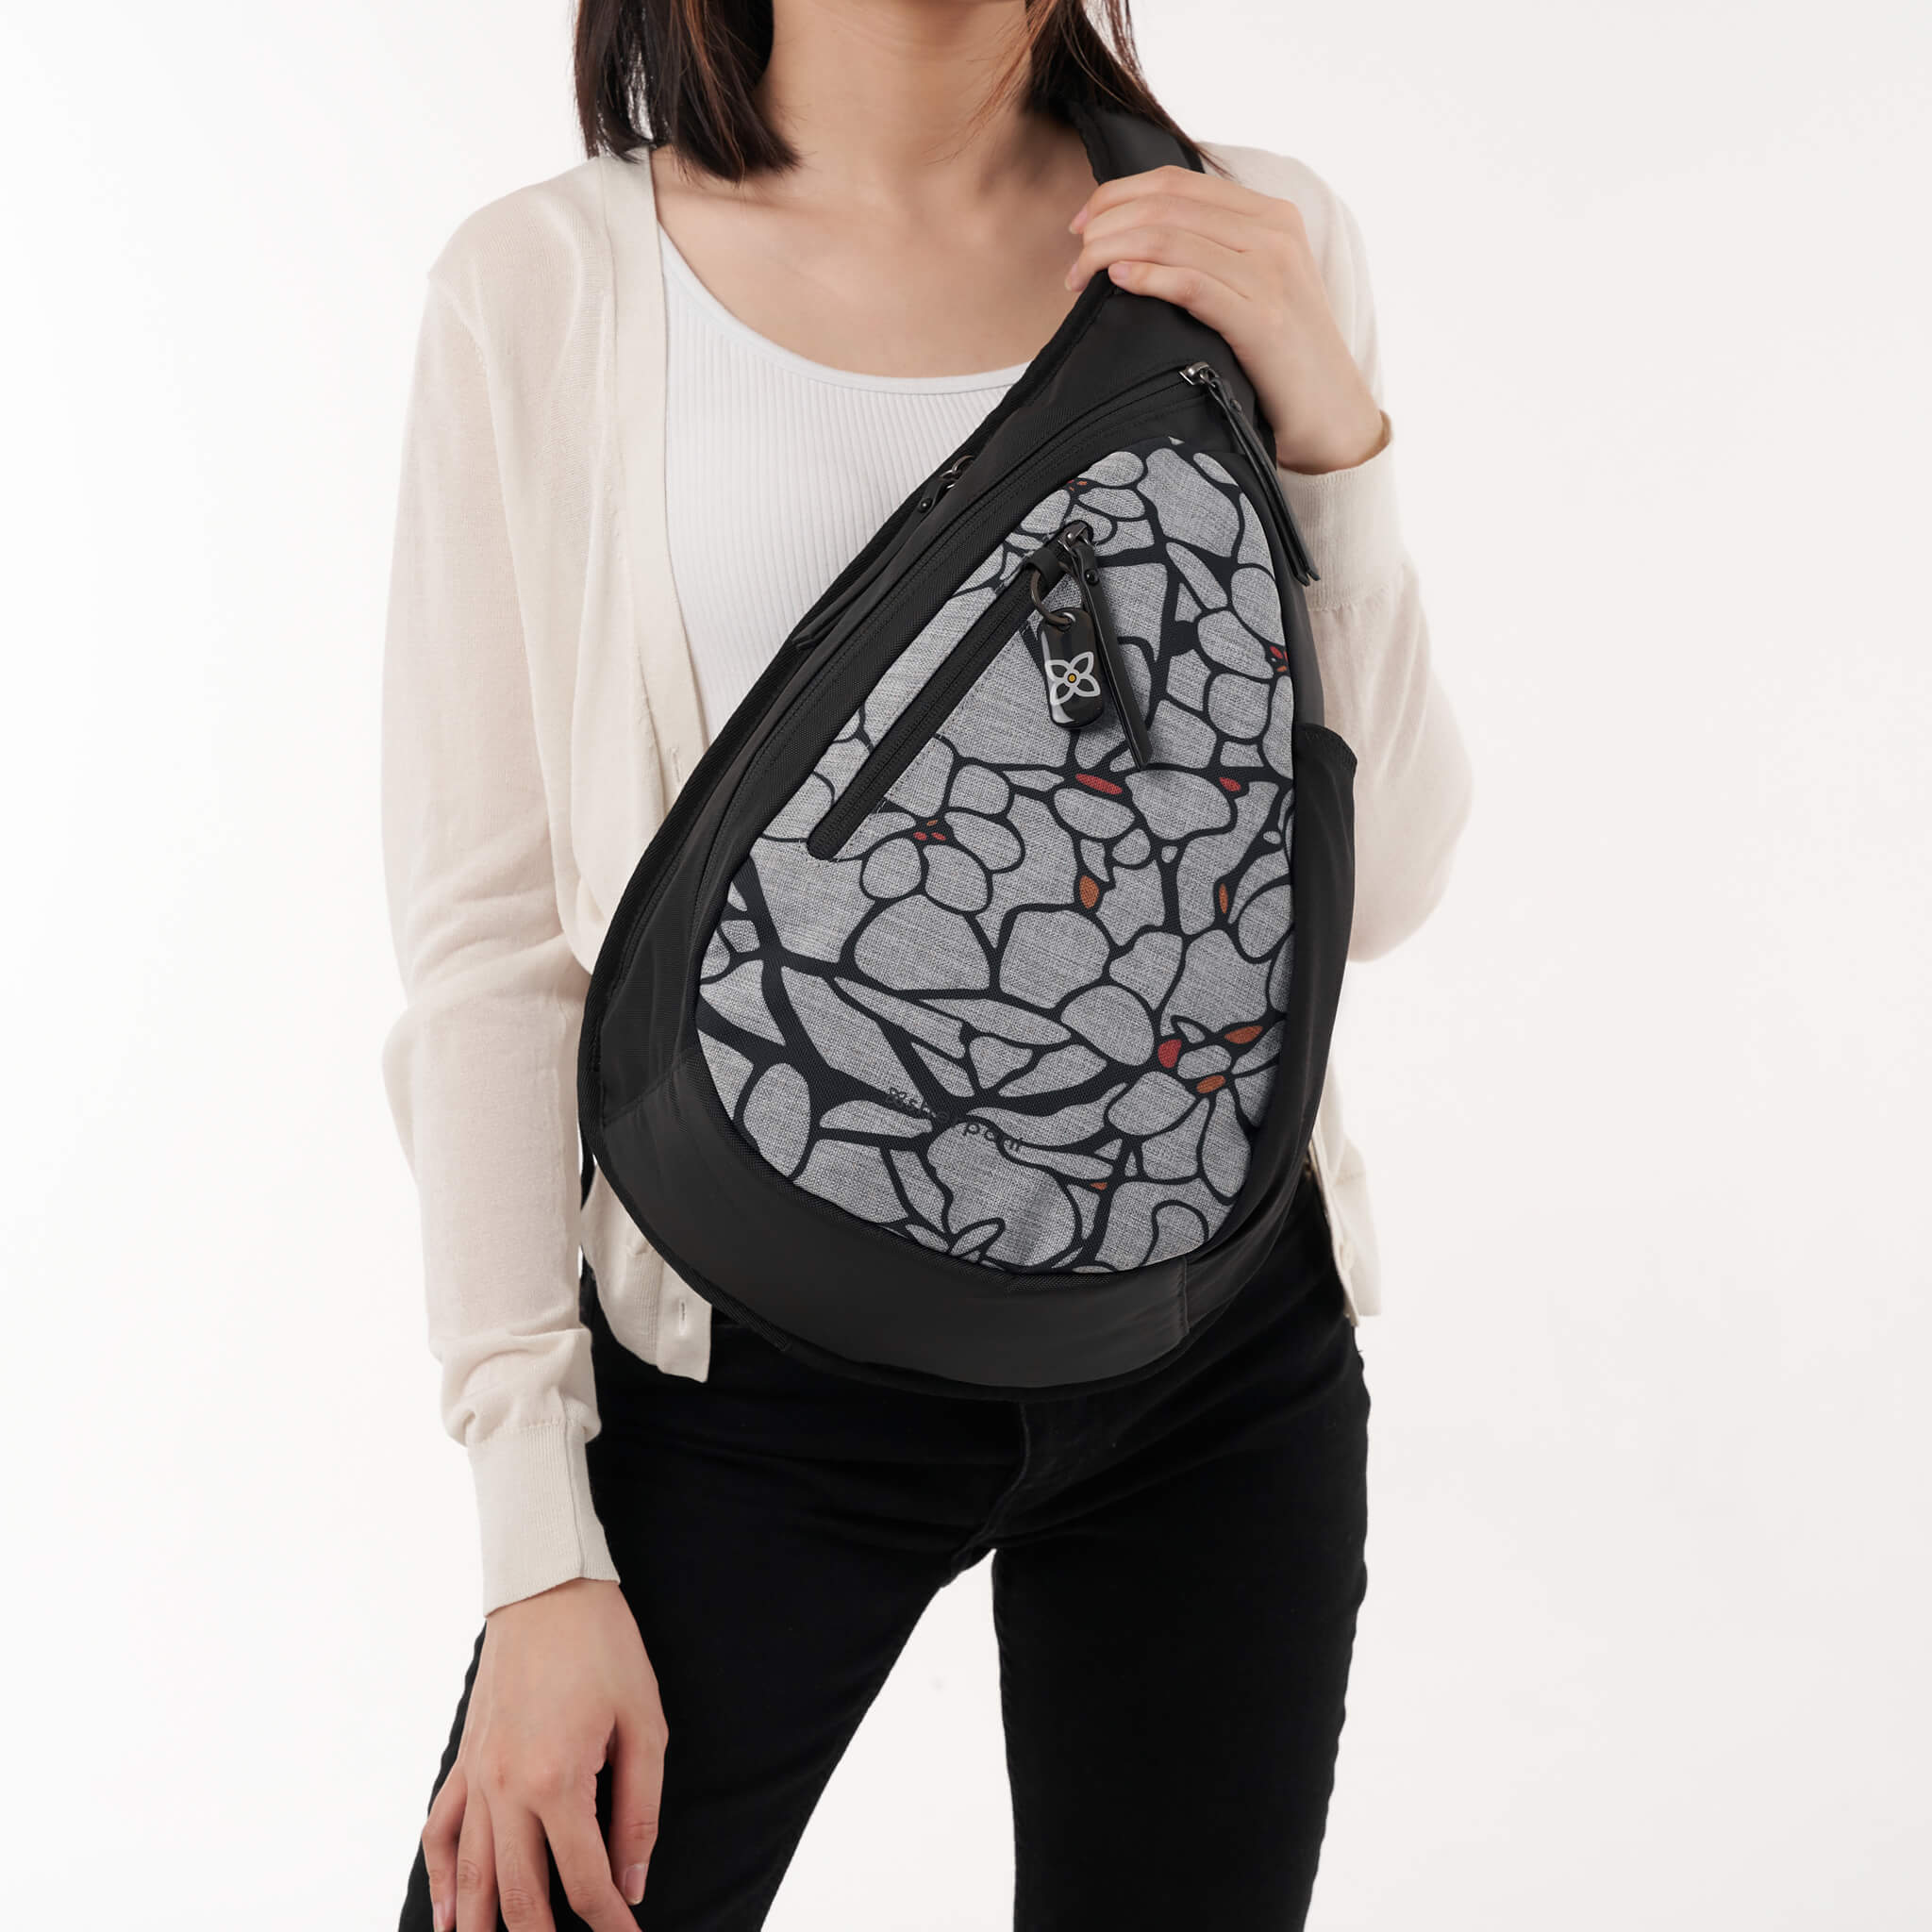 ESPRIT - Off-the-shoulder cotton top at our online shop